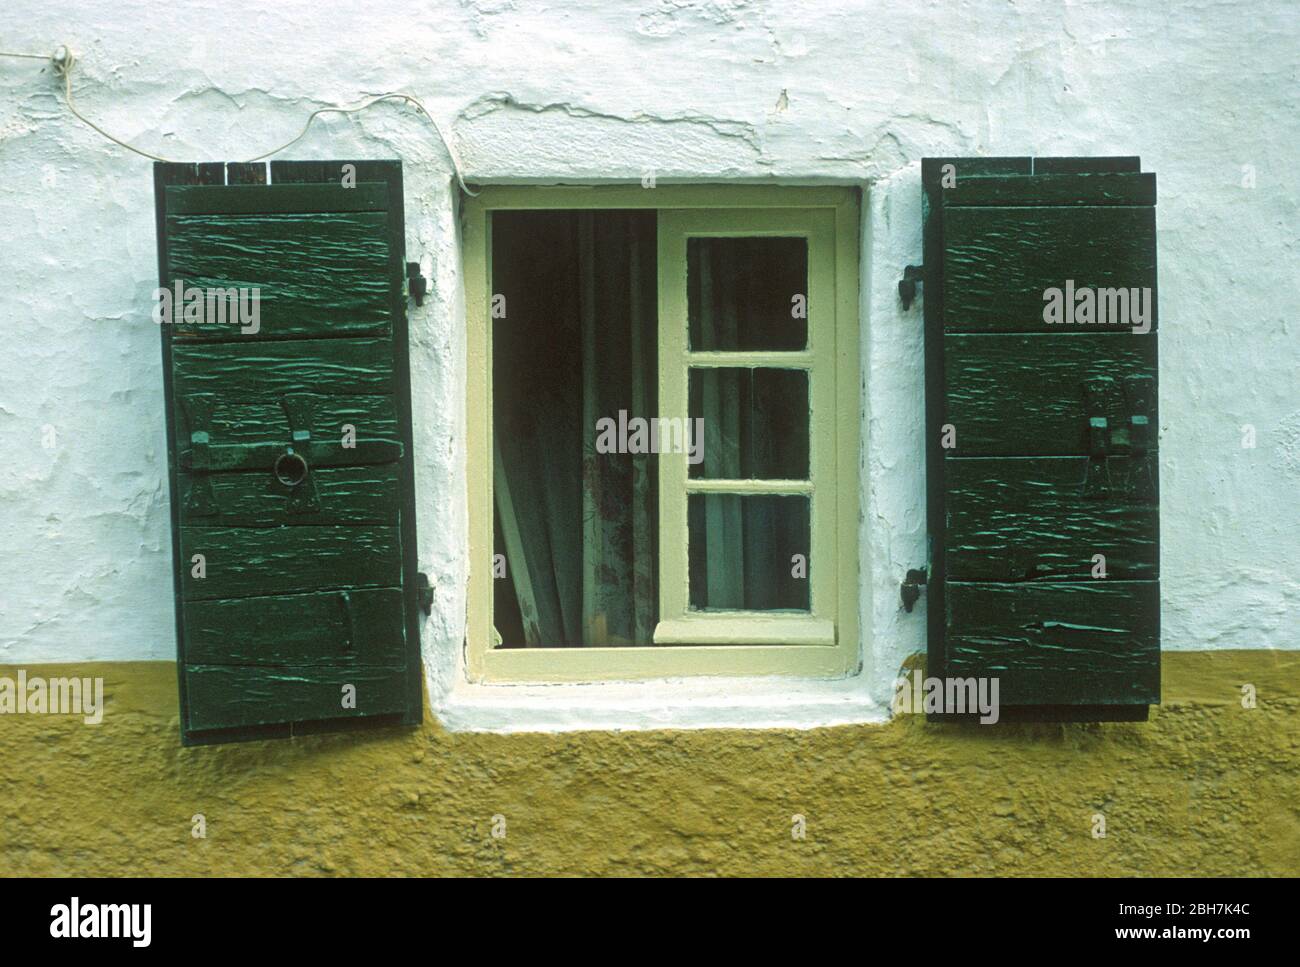 Verde scuro, persiane di legno ripiegate sul lato di una finestra di limone in un giallo e bianco, dipinto parete a Paxos, Grecia. Vedere l'altra immagine in cui gli otturatori sono chiusi. Foto Stock